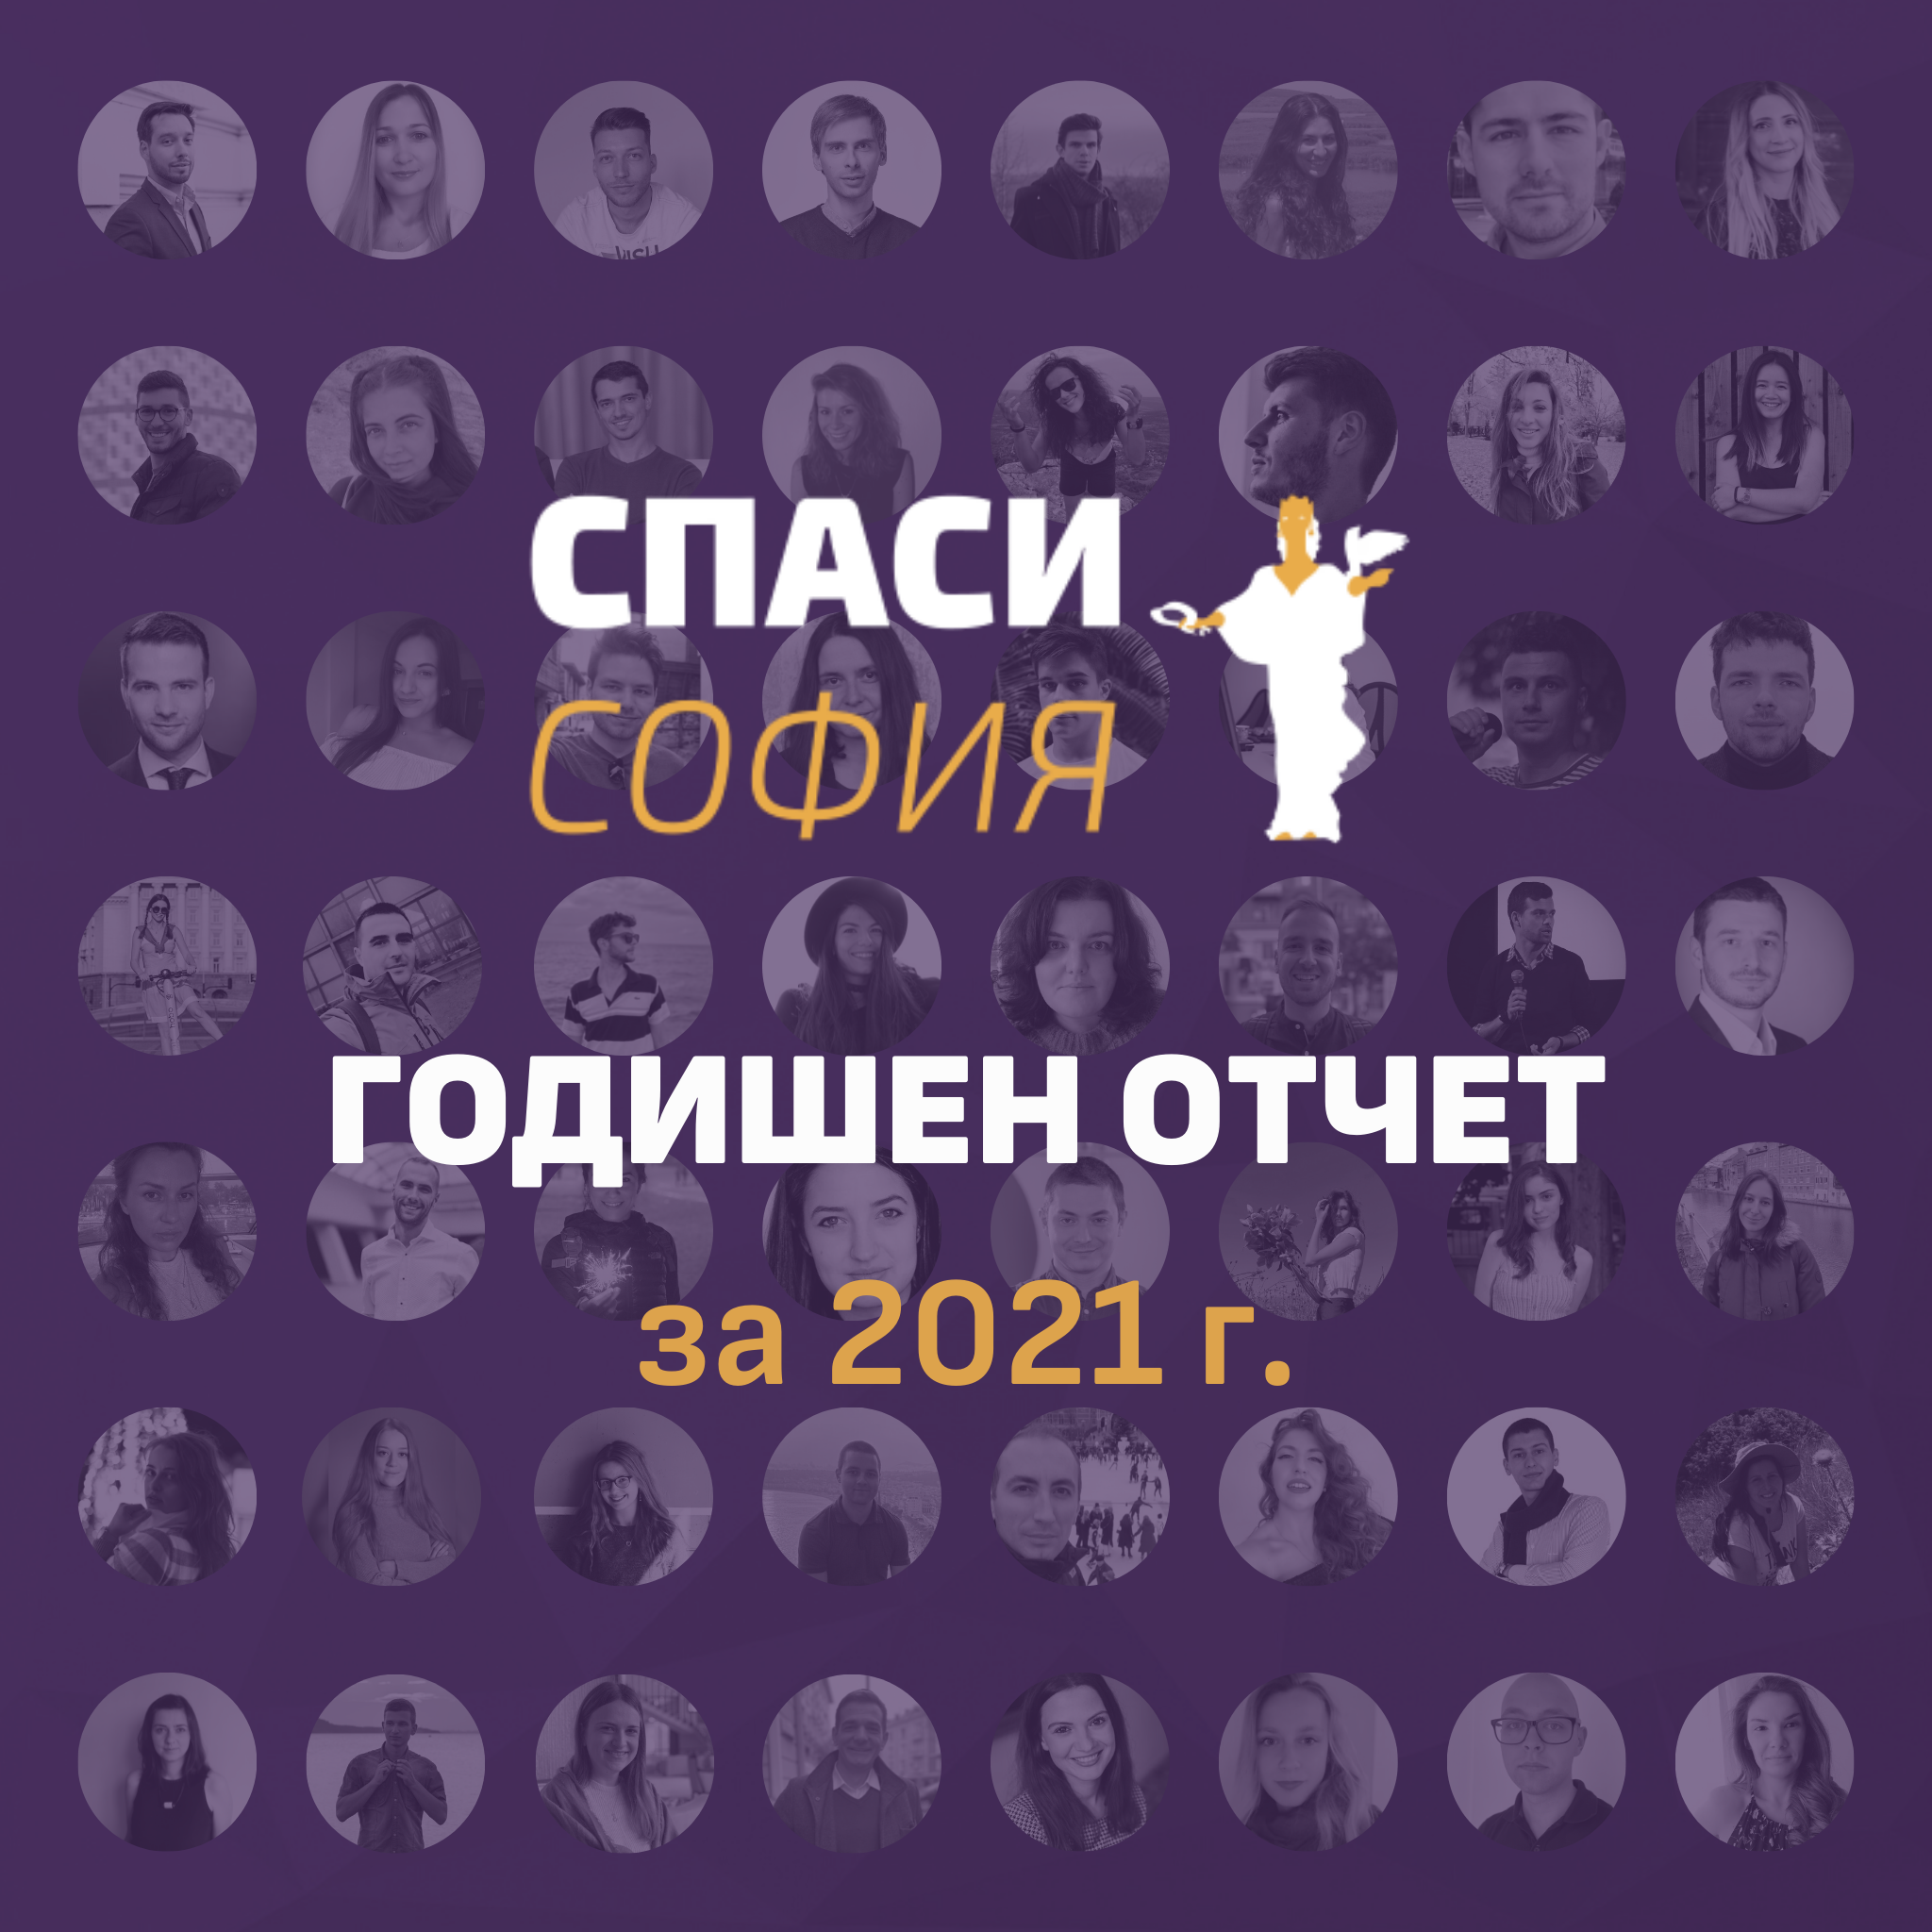 Годишен отчет Спаси София 2021 г.